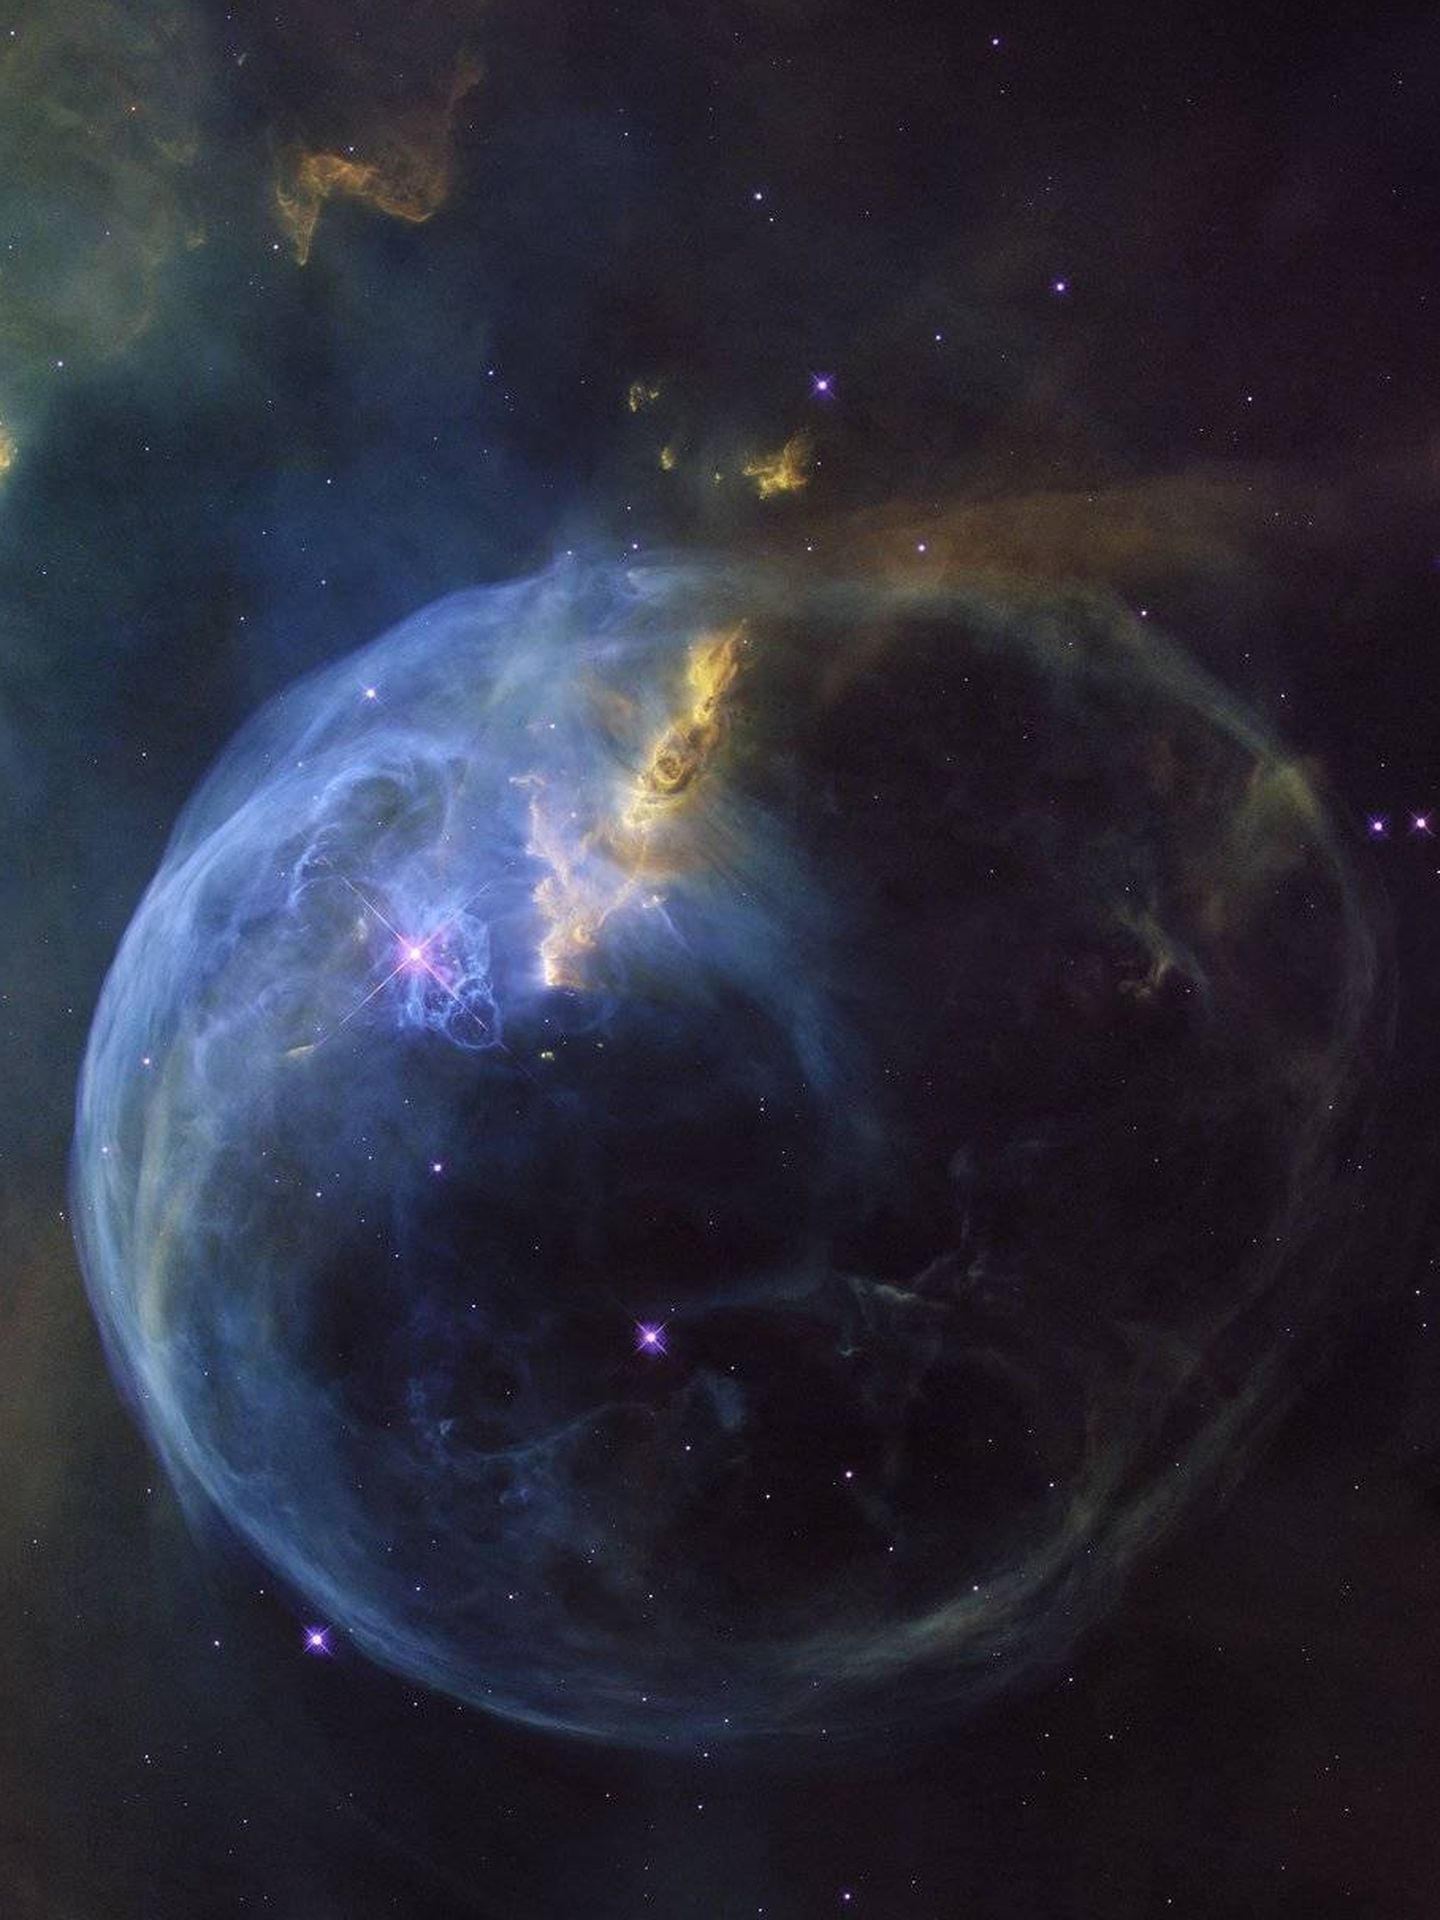 La nebulosa de la burbuja tiene una enorme estrella central que provoca vientos de partículas de hasta 2.000 km/s. Distancia aproximada: 8.000 años luz.